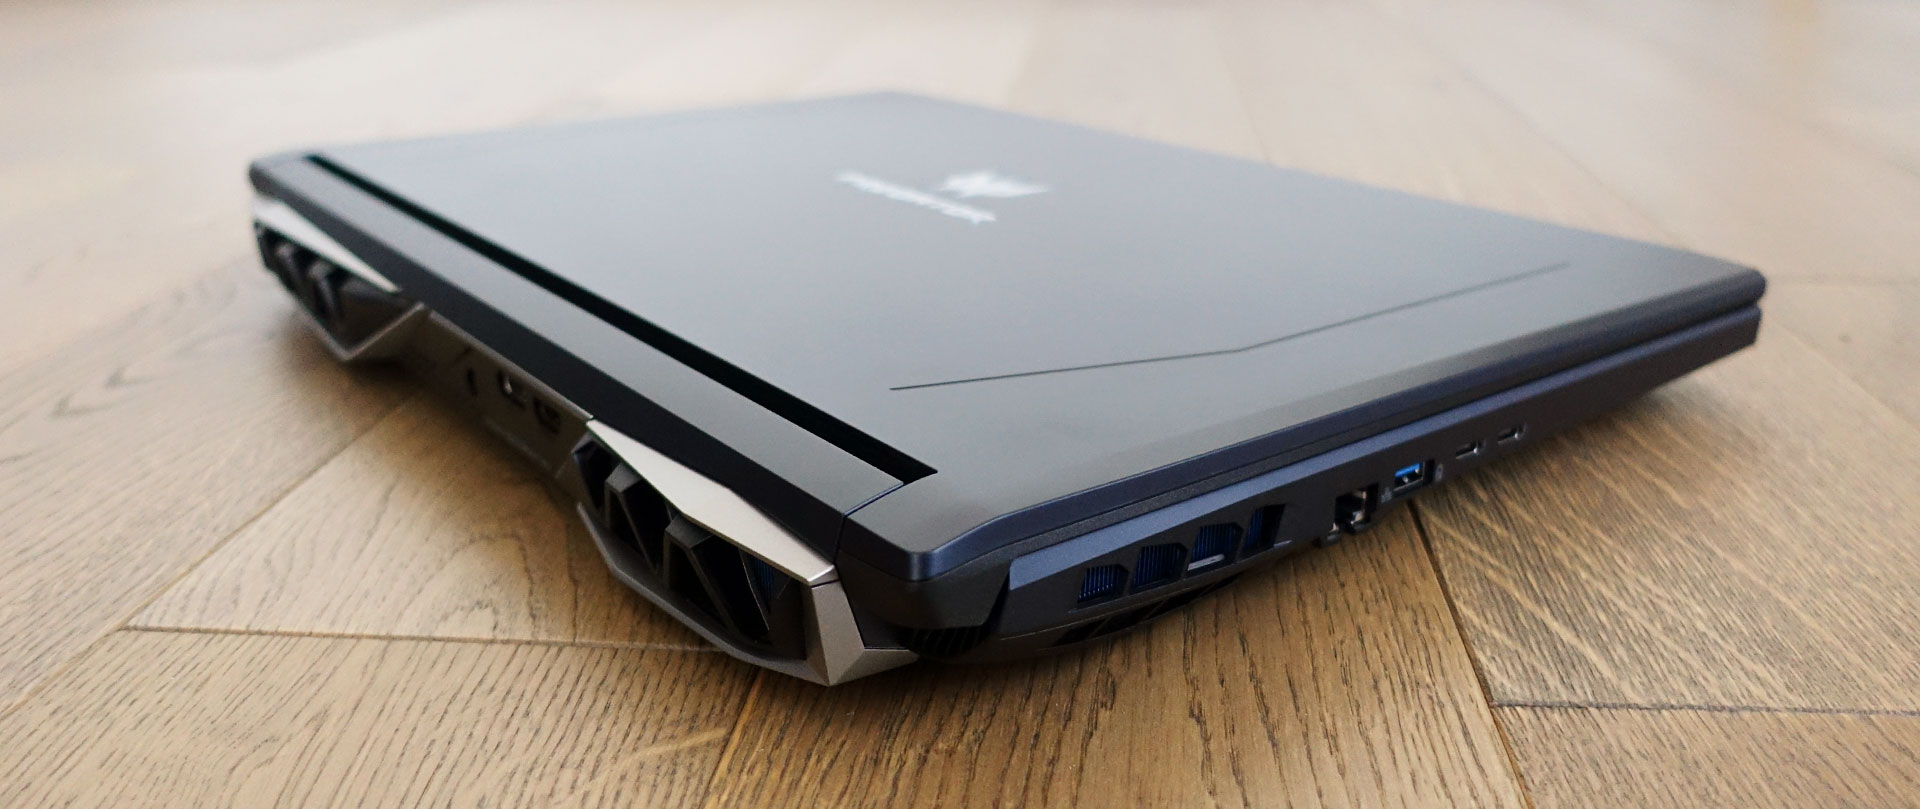 Acer Predator Helios 500 review (PH517-51 model - Core i9, GTX 1070)